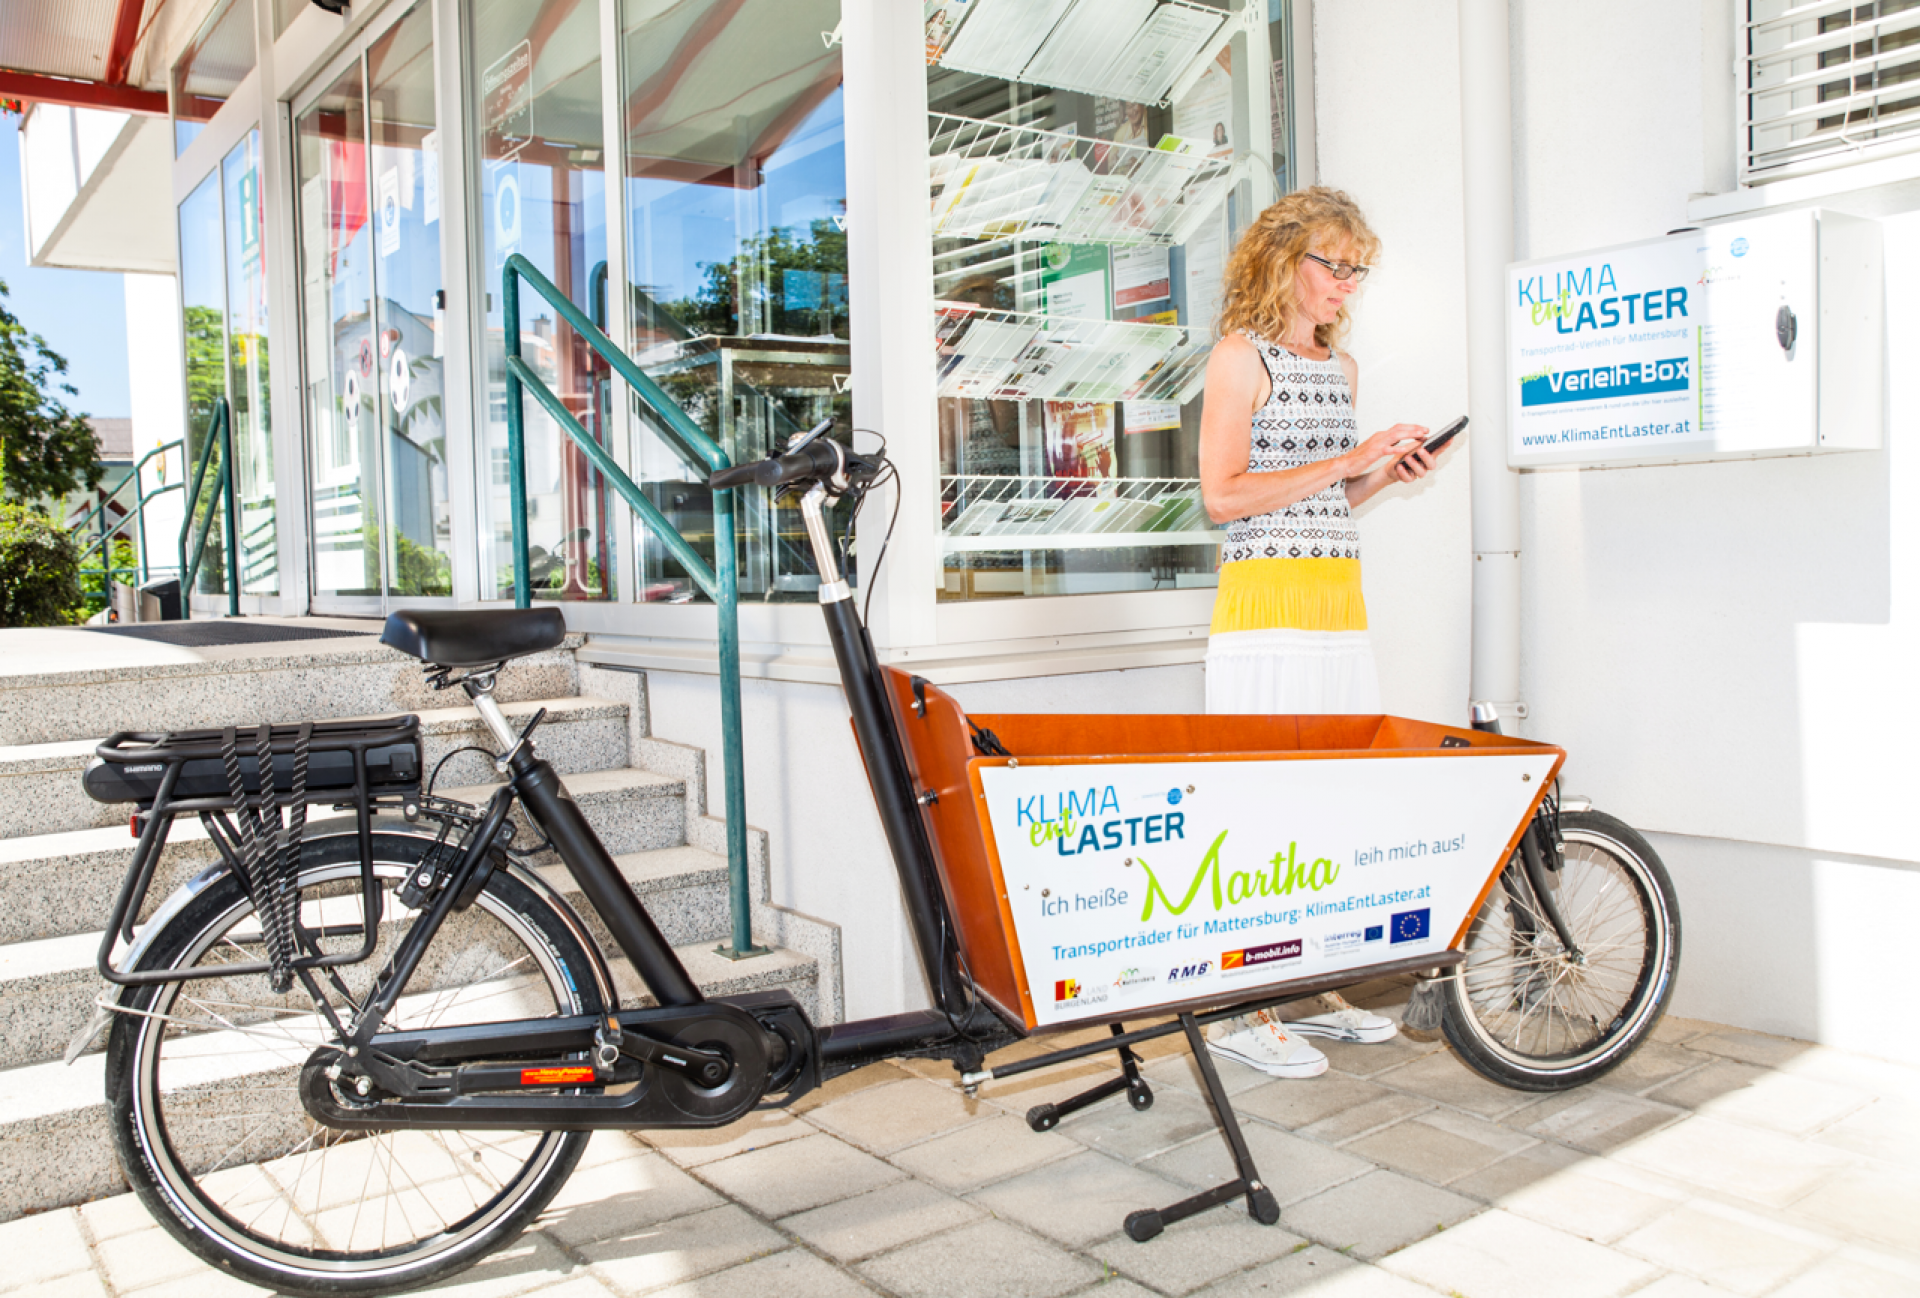 KlimaEntLaster - Transportrad-Sharing für Gemeinden mit Leitfaden & Verleihbox               